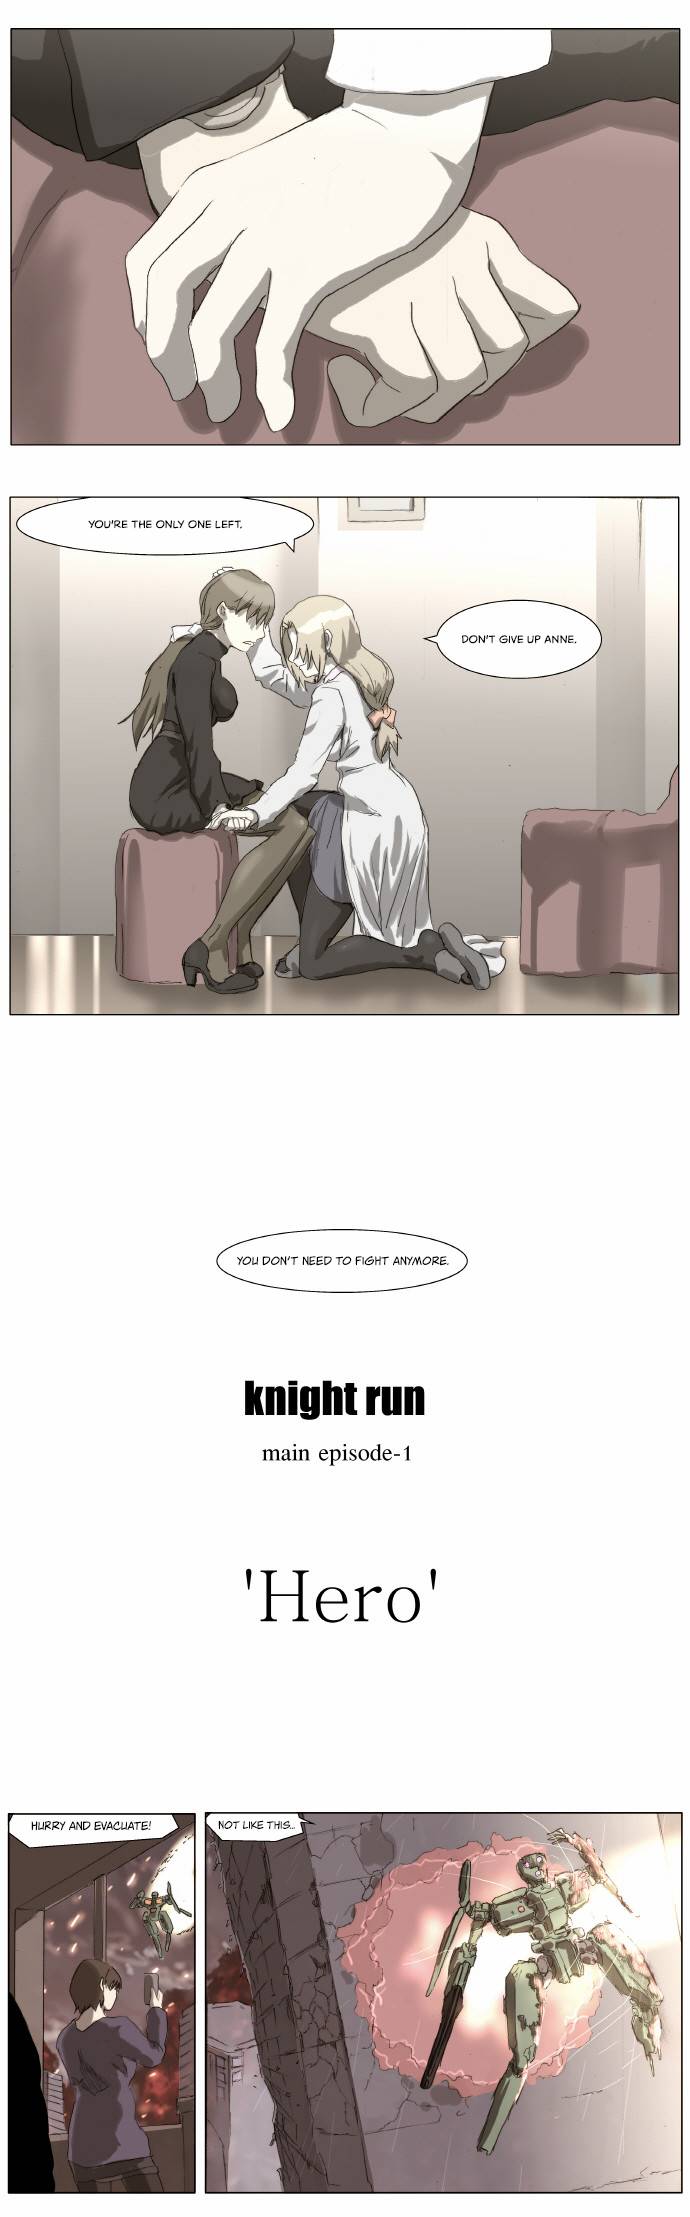 Knight Run 171 4